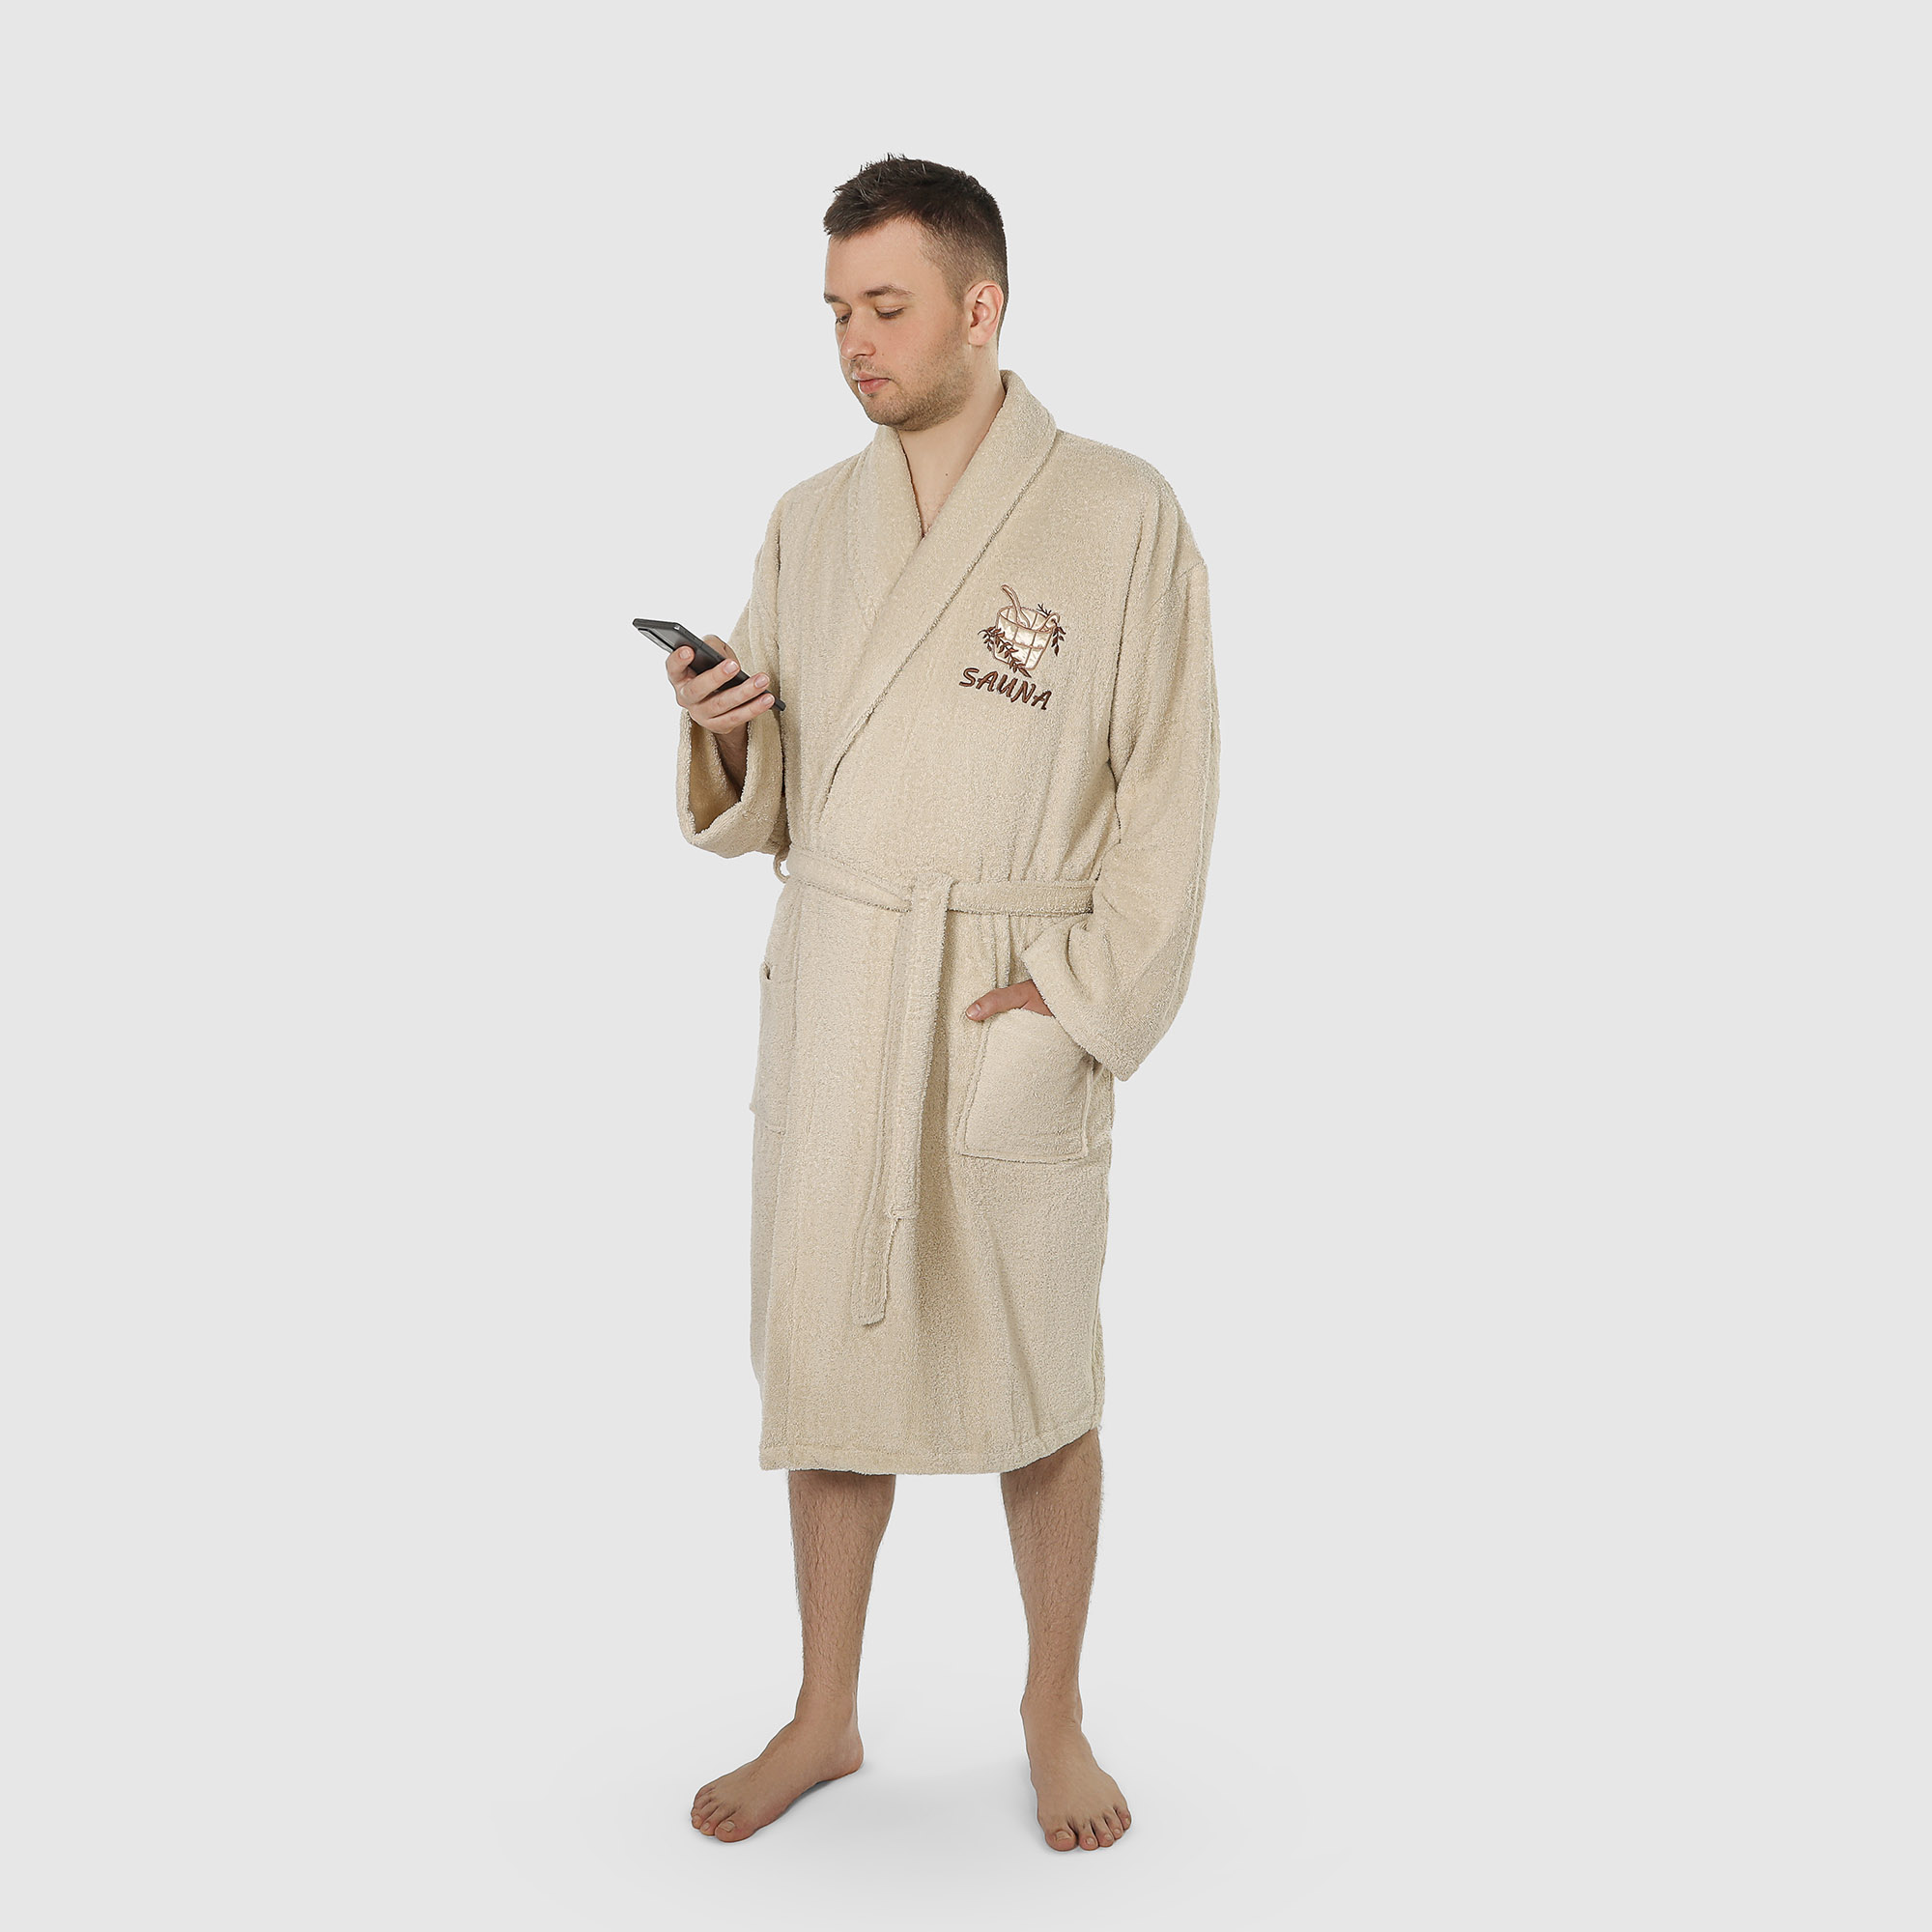 Халат мужской махровый с воротником Asil sauna brown m костюм мужской